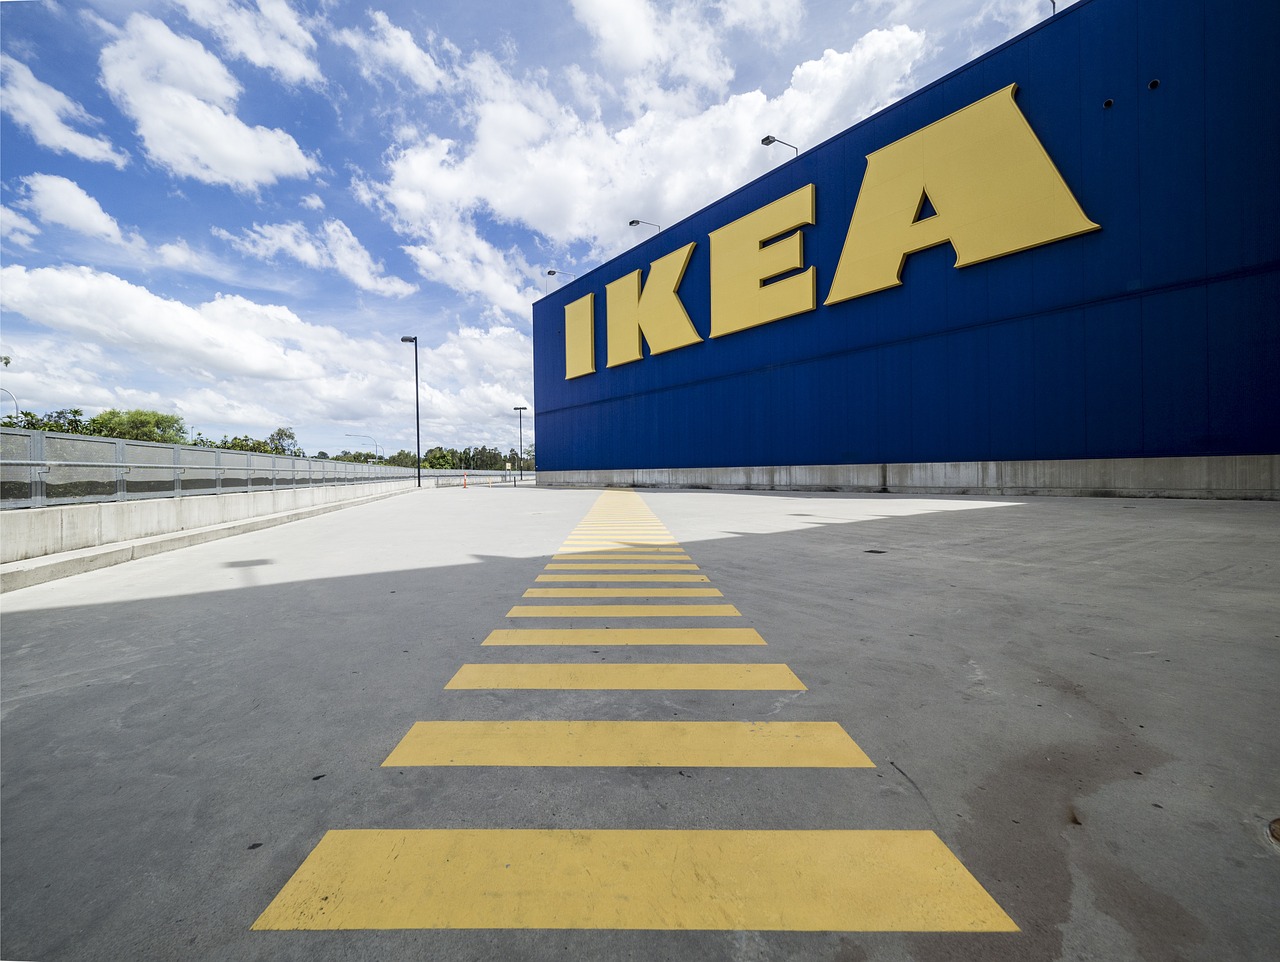 Köp dina IKEA-möbler på Amazon eller Alibaba